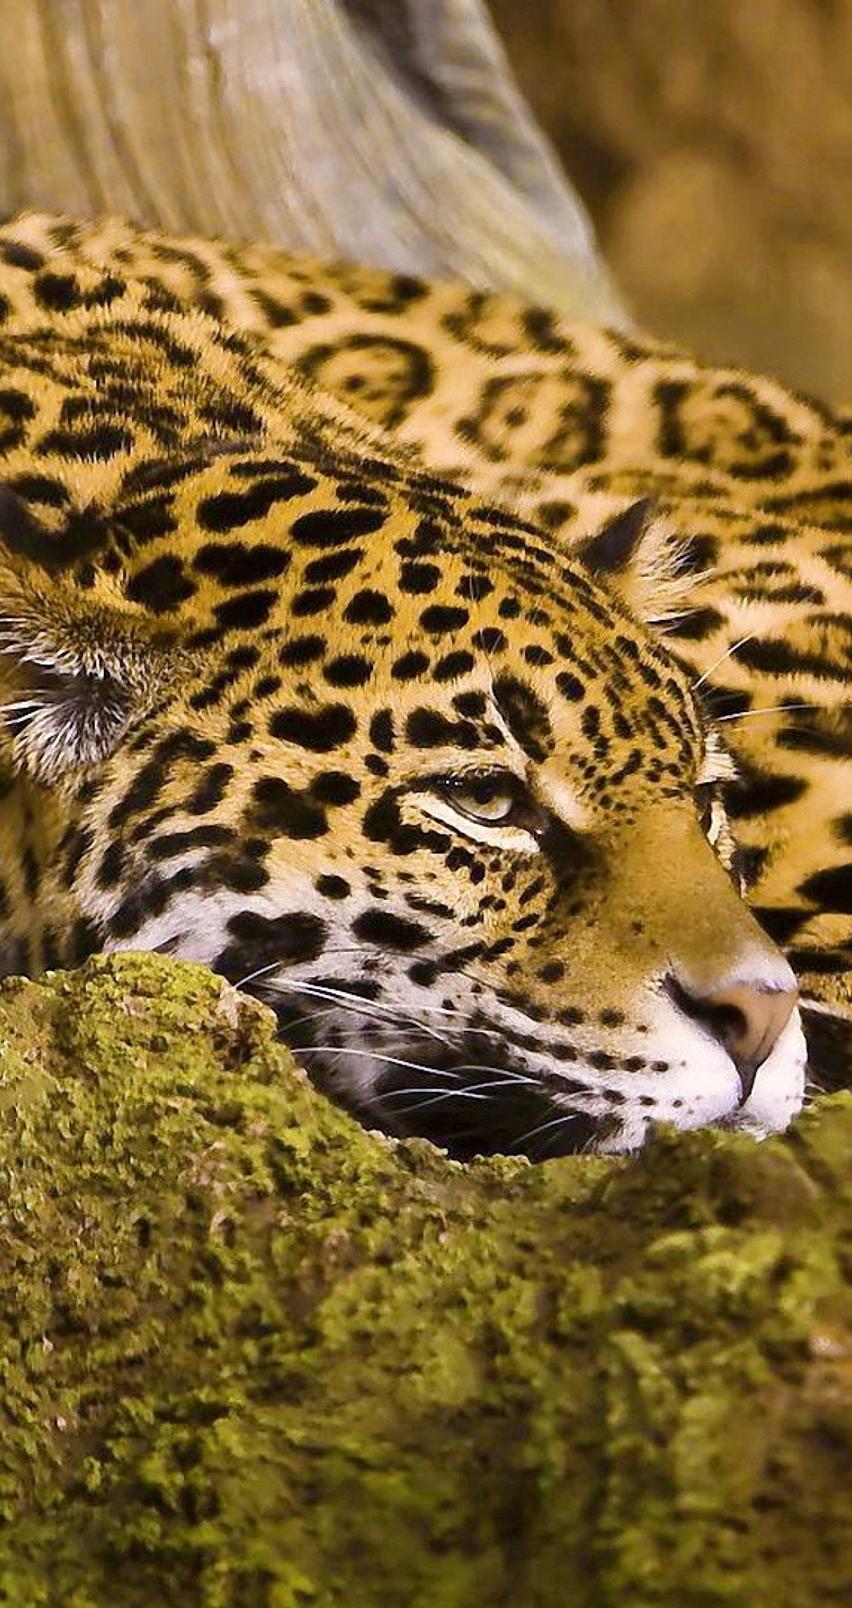 A beautiful jaguar on a rock - Wild animal